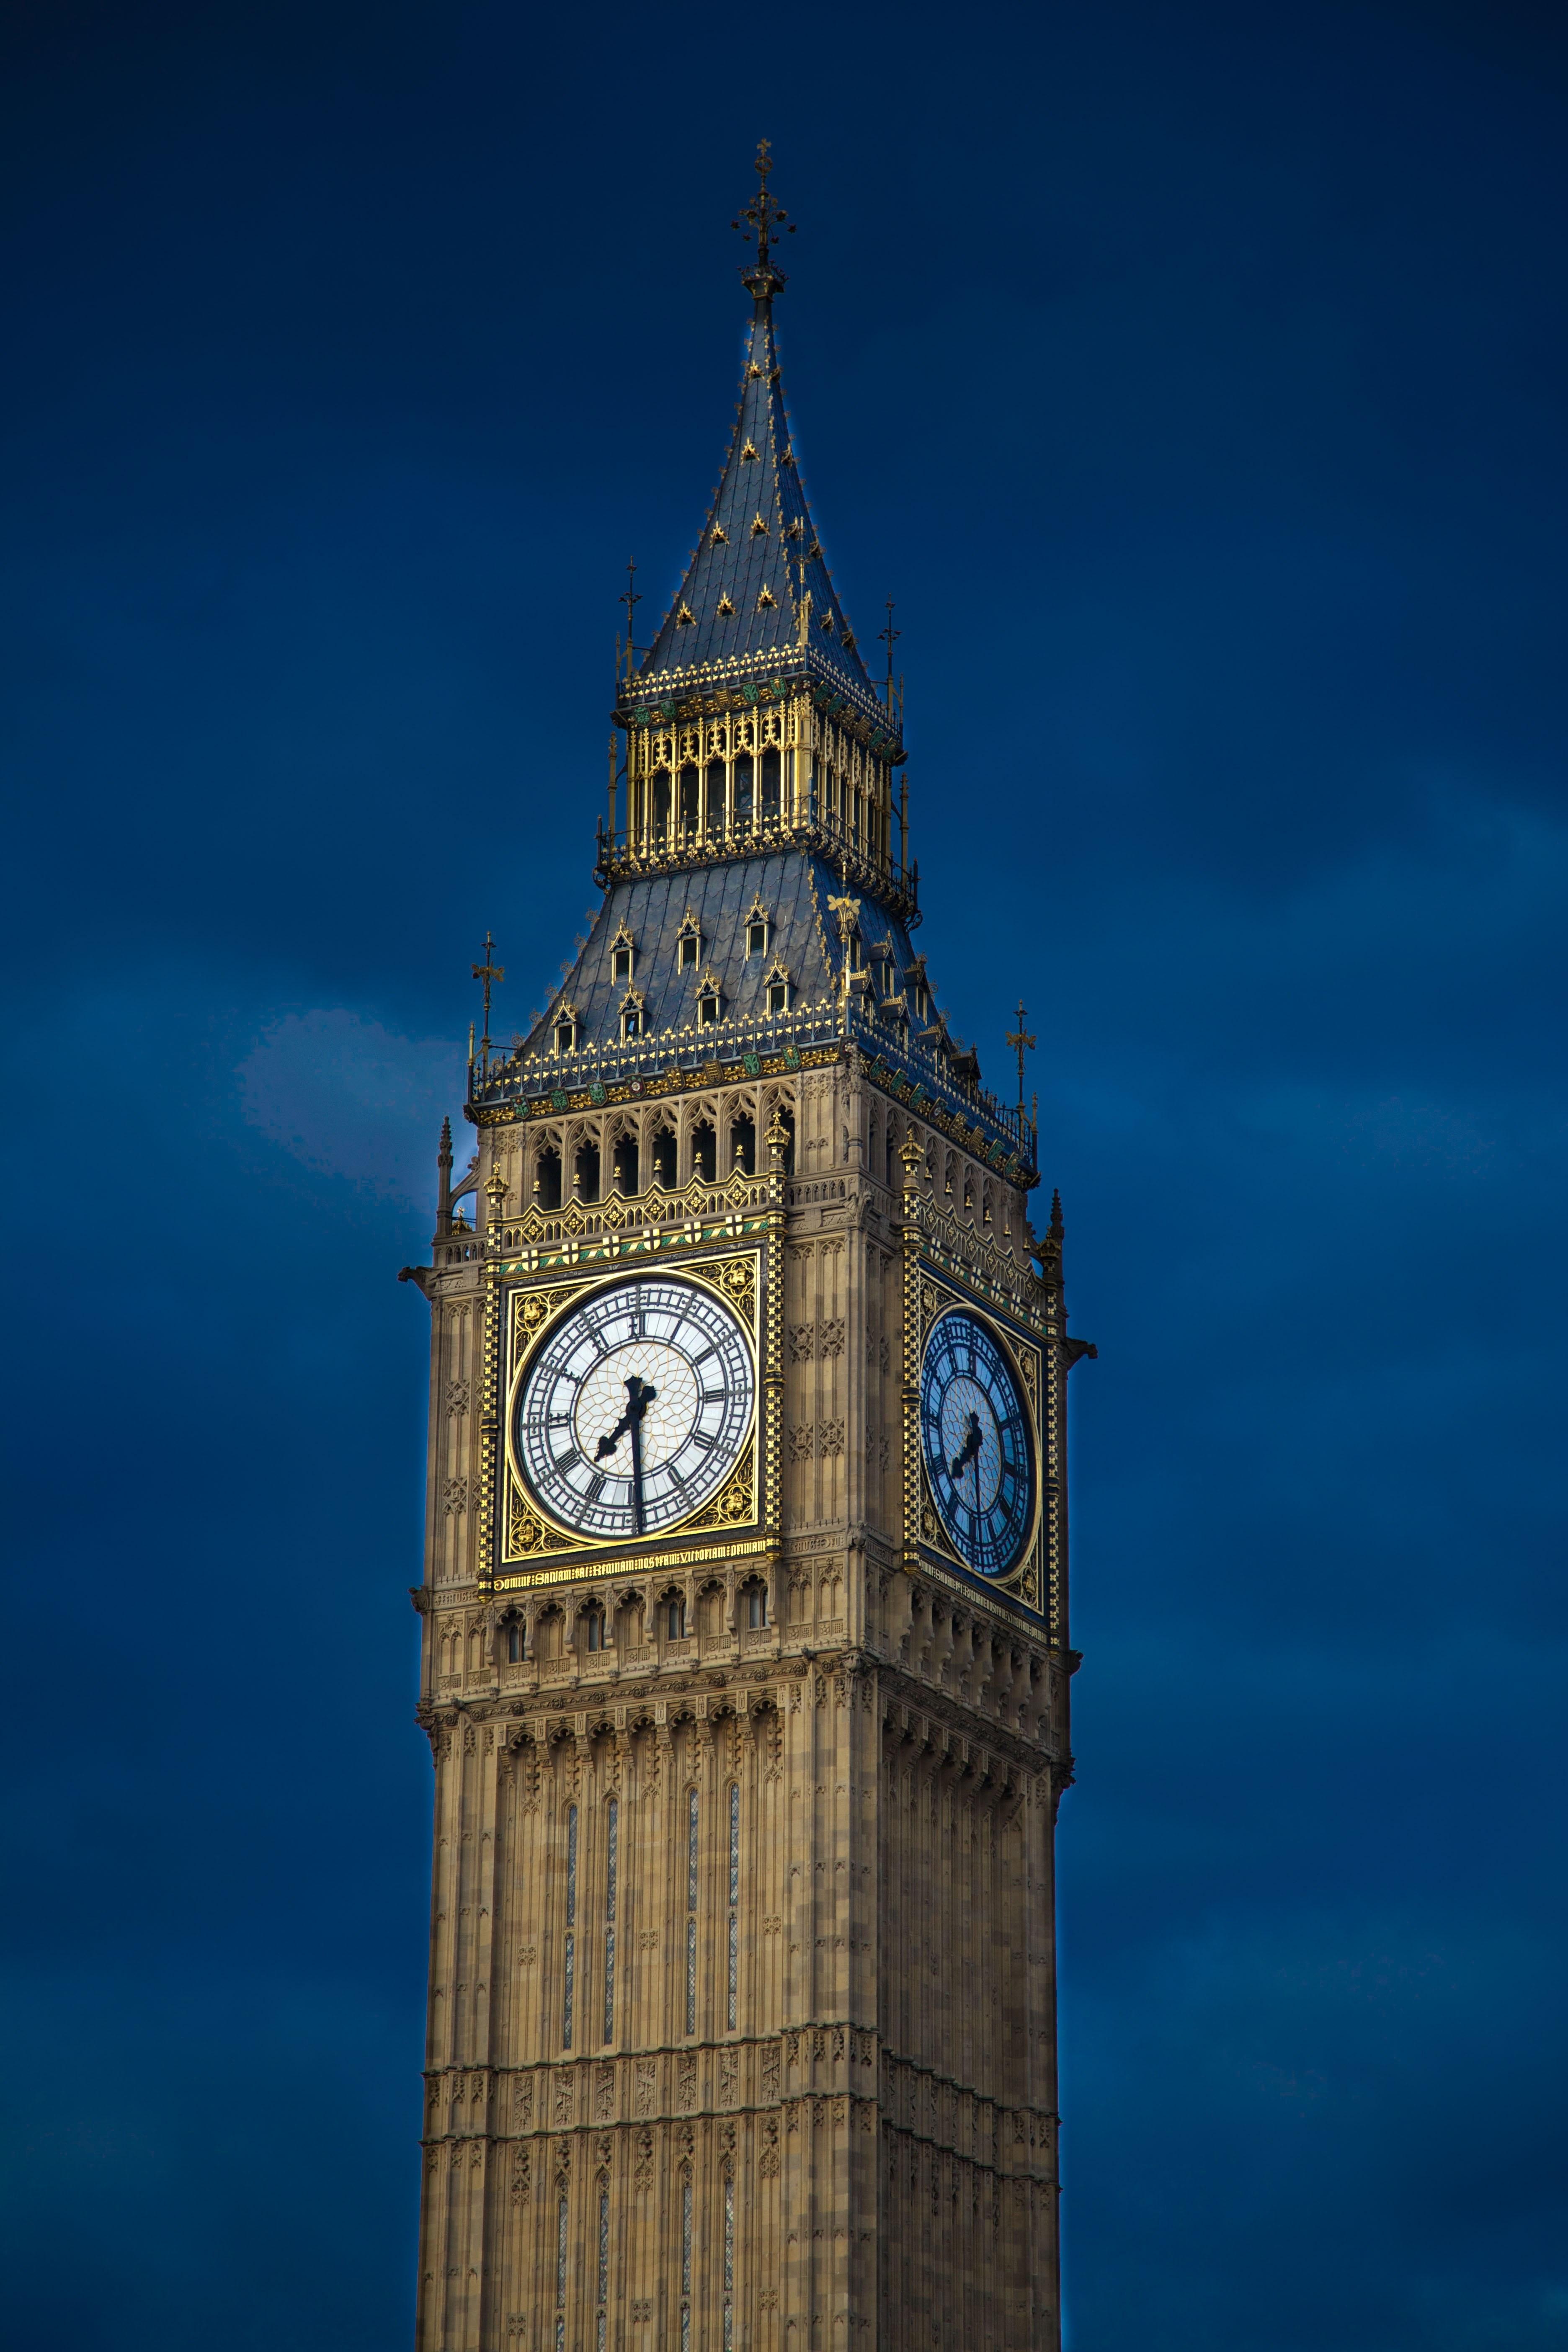 Биг башня в лондоне. Часовая башня Вестминстерского дворца. Башня Биг Бен в Лондоне. Биг-Бен (башня Елизаветы). Часовая башня Биг Бен.